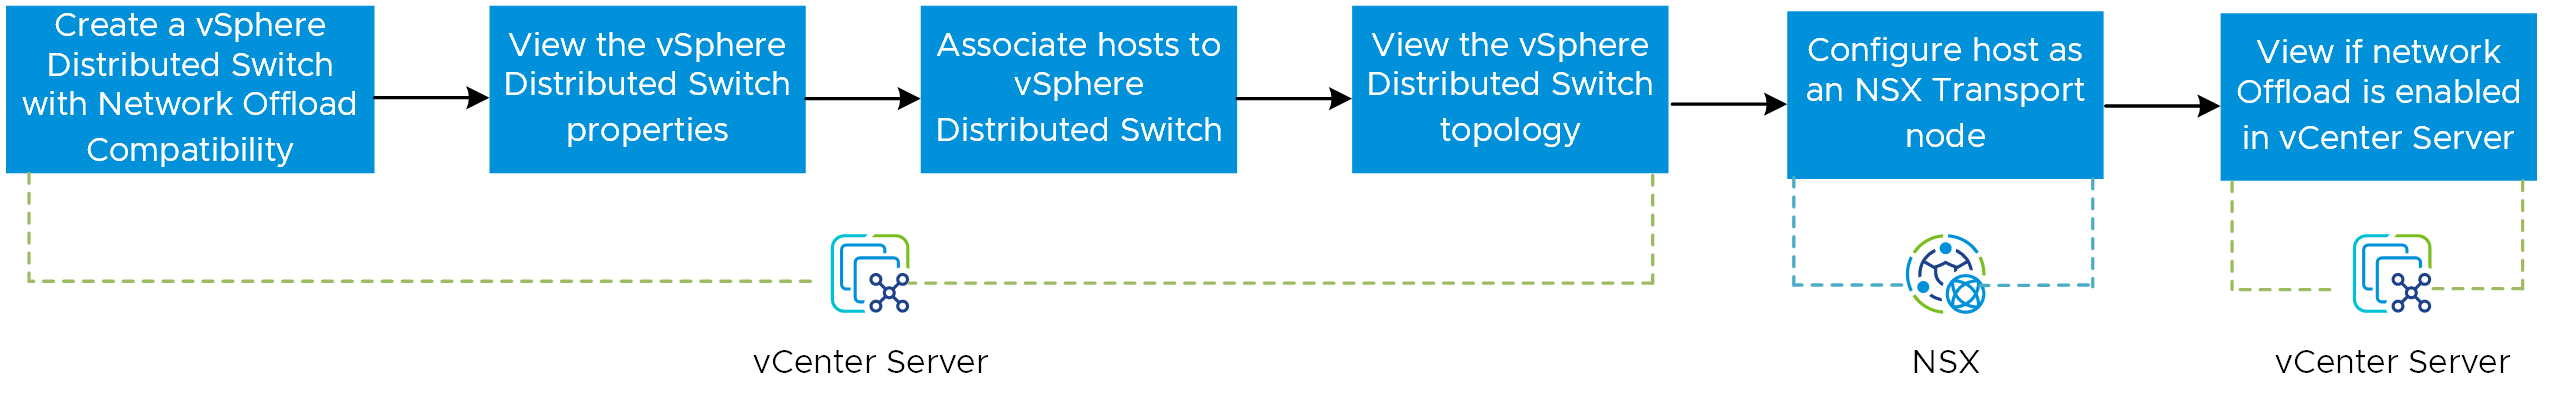 Imagen que muestra el flujo de trabajo para habilitar la capacidad de descarga de red